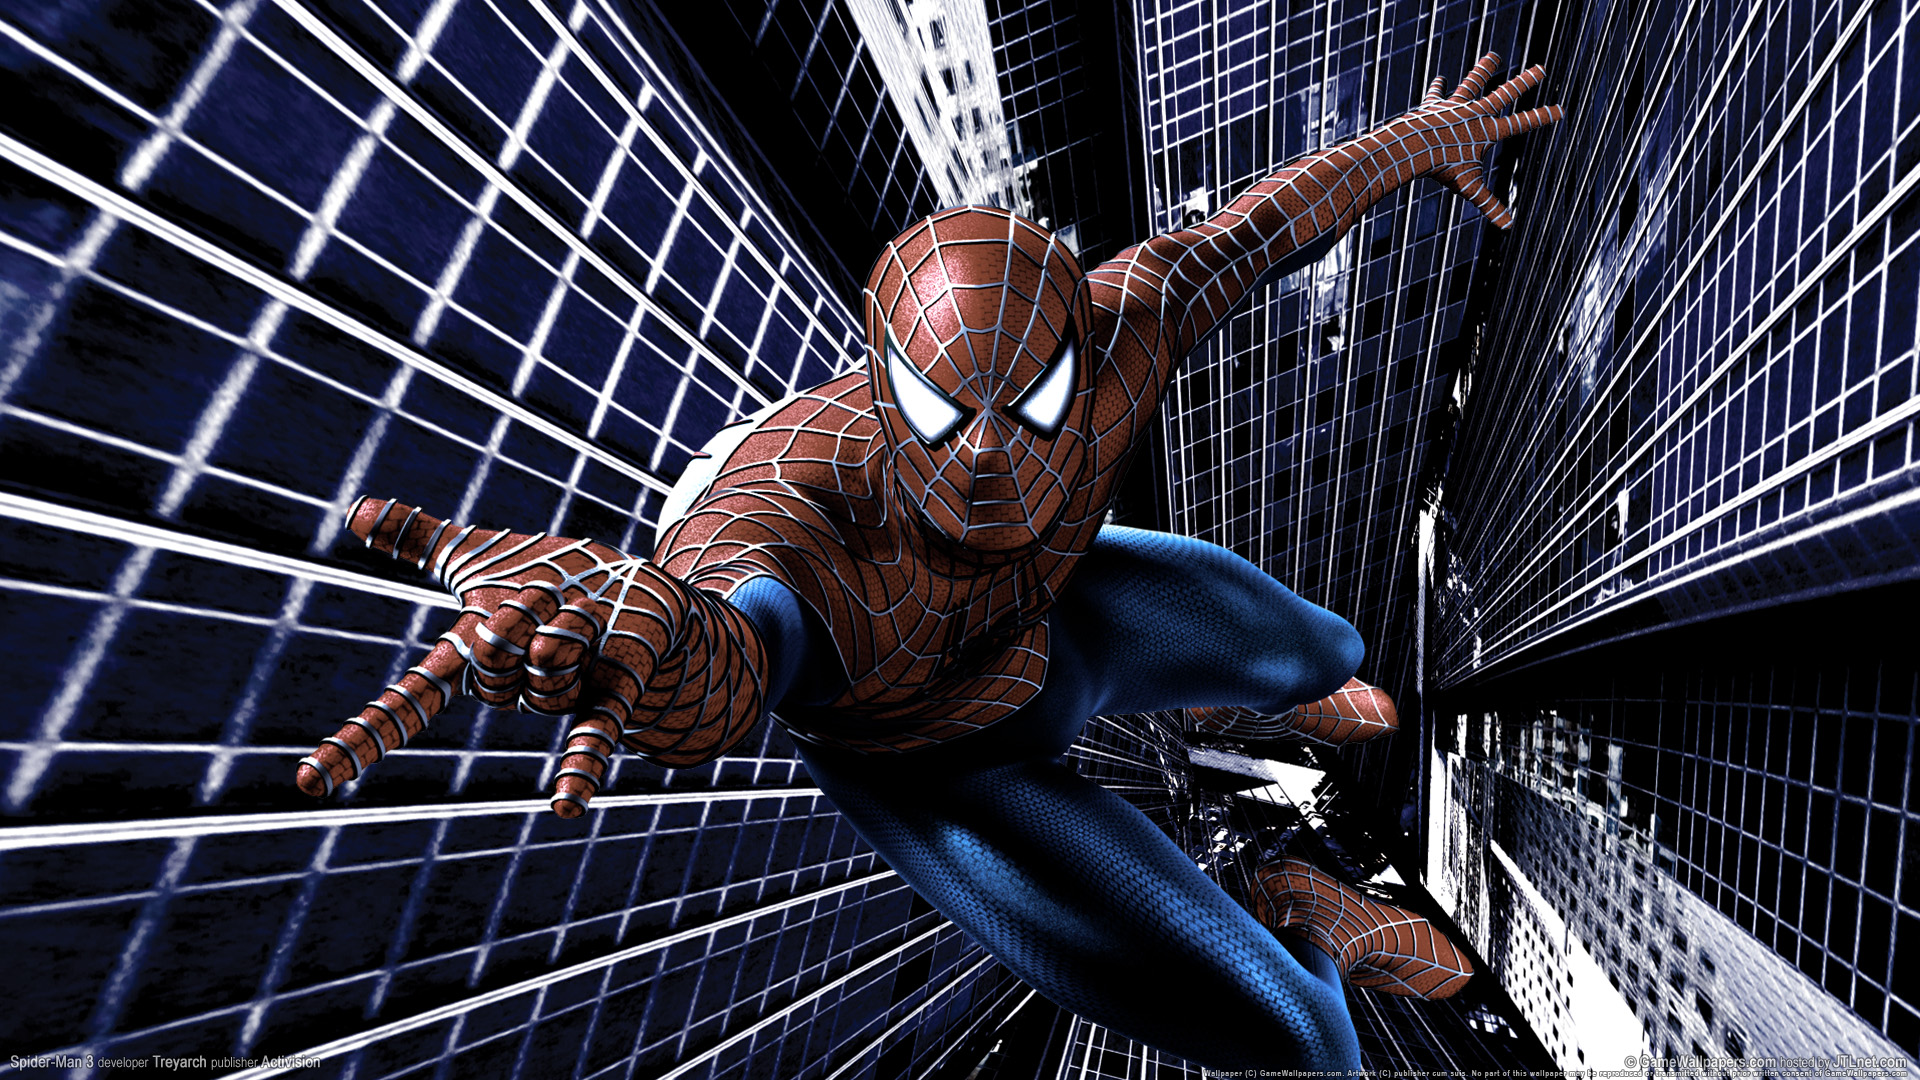 Los mejores fondos de pantalla de Spider Man 3: El Videojuego para la pantalla del teléfono